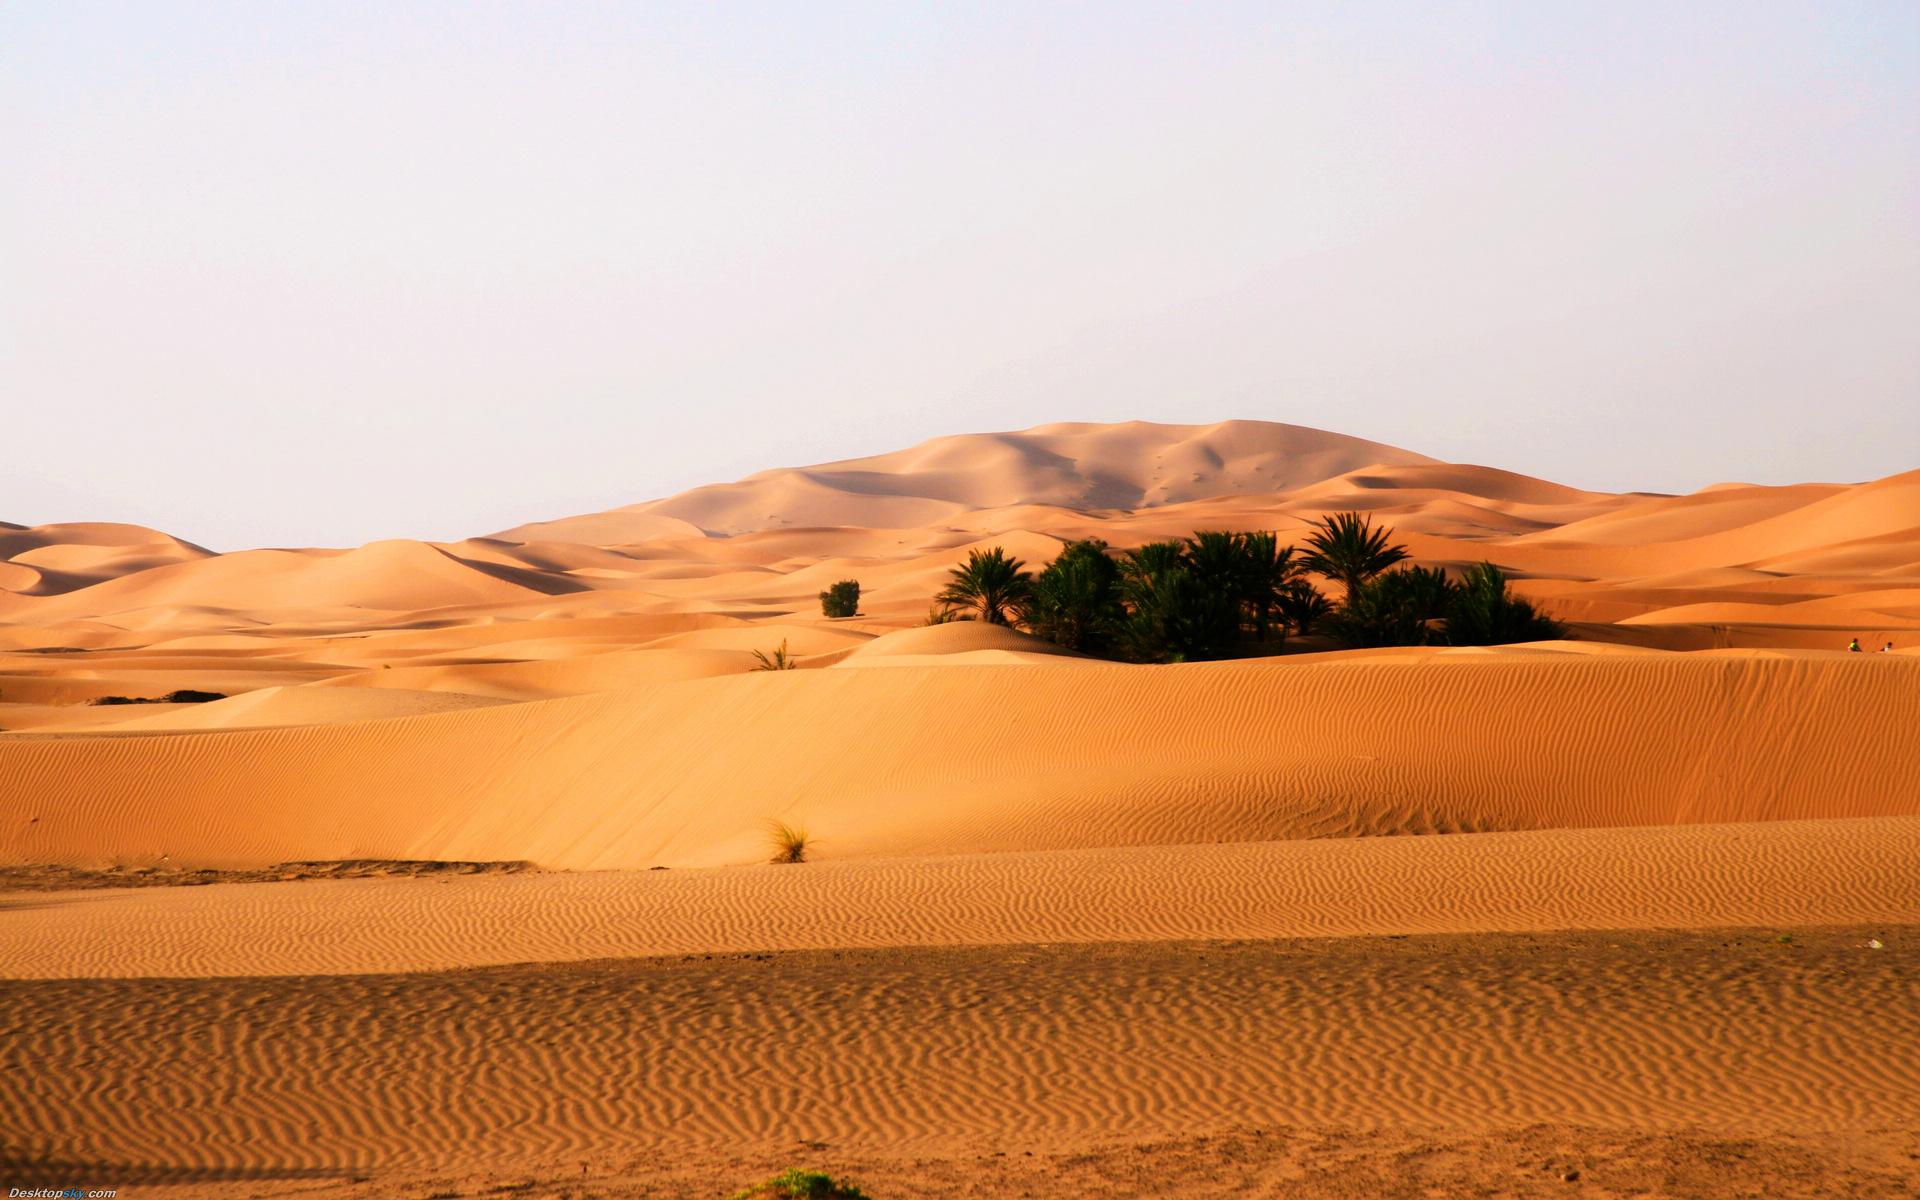 荒漠生態系統——荒漠化是對人類的嚴峻挑戰